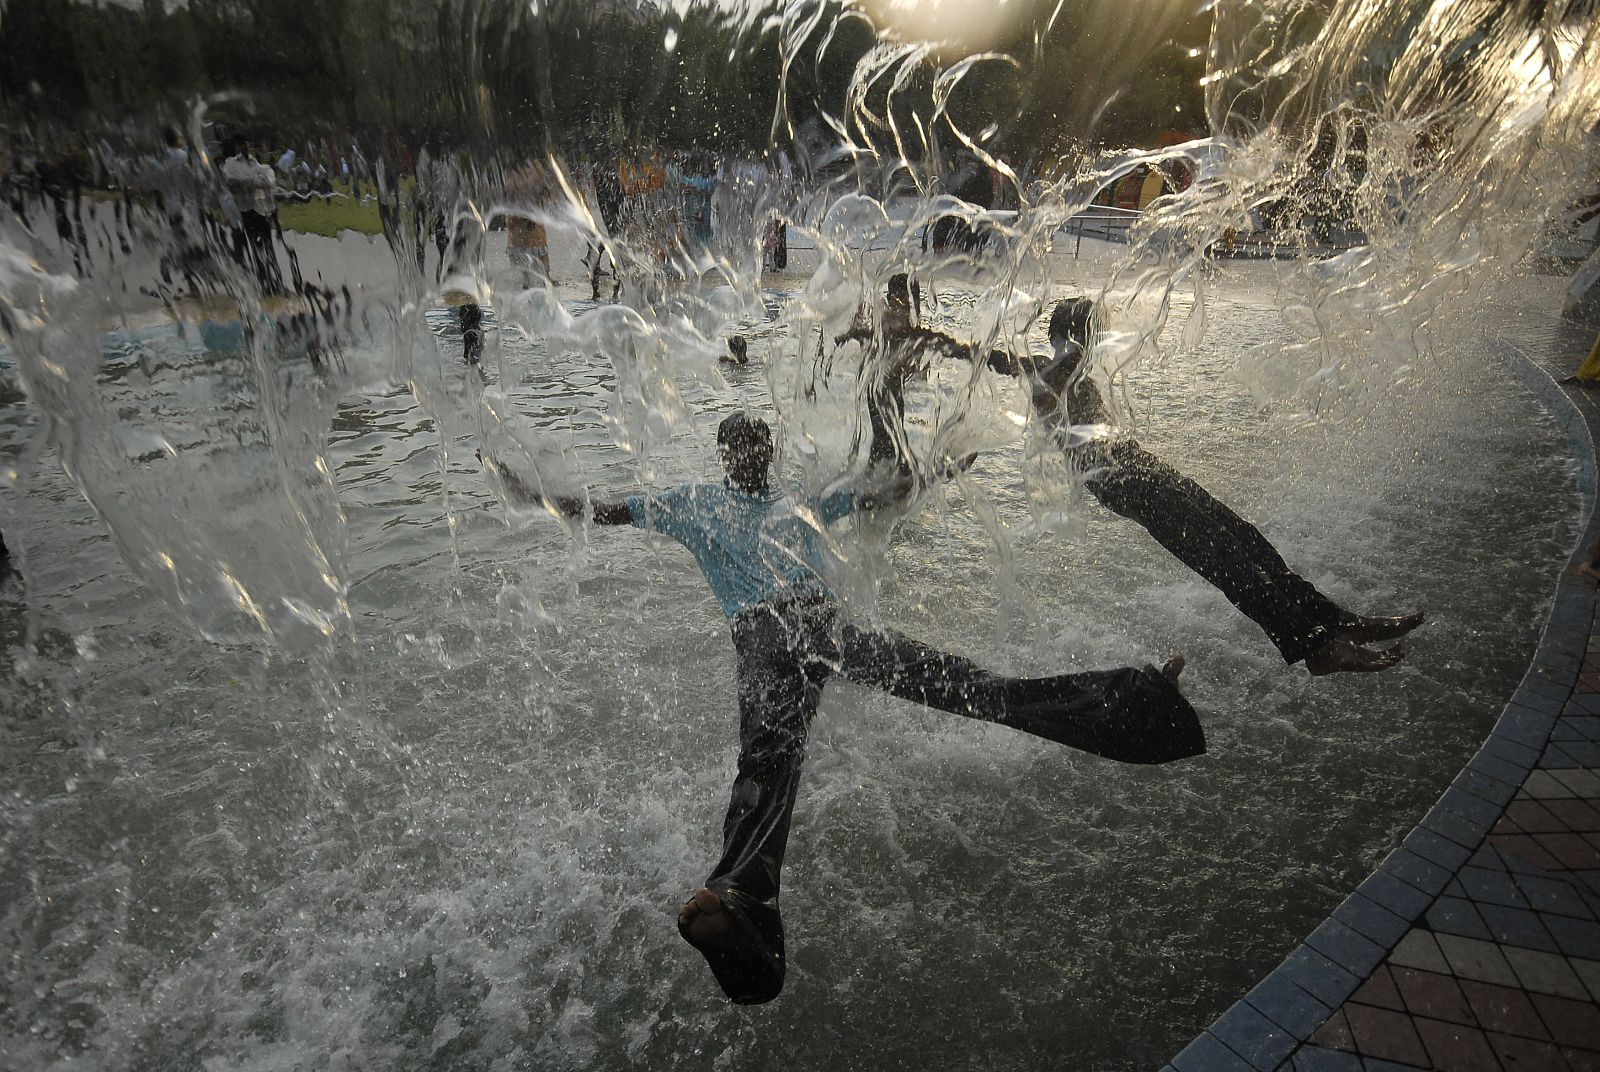 Jóvenes refrescándose en una fuente tras un día de calor agobiante